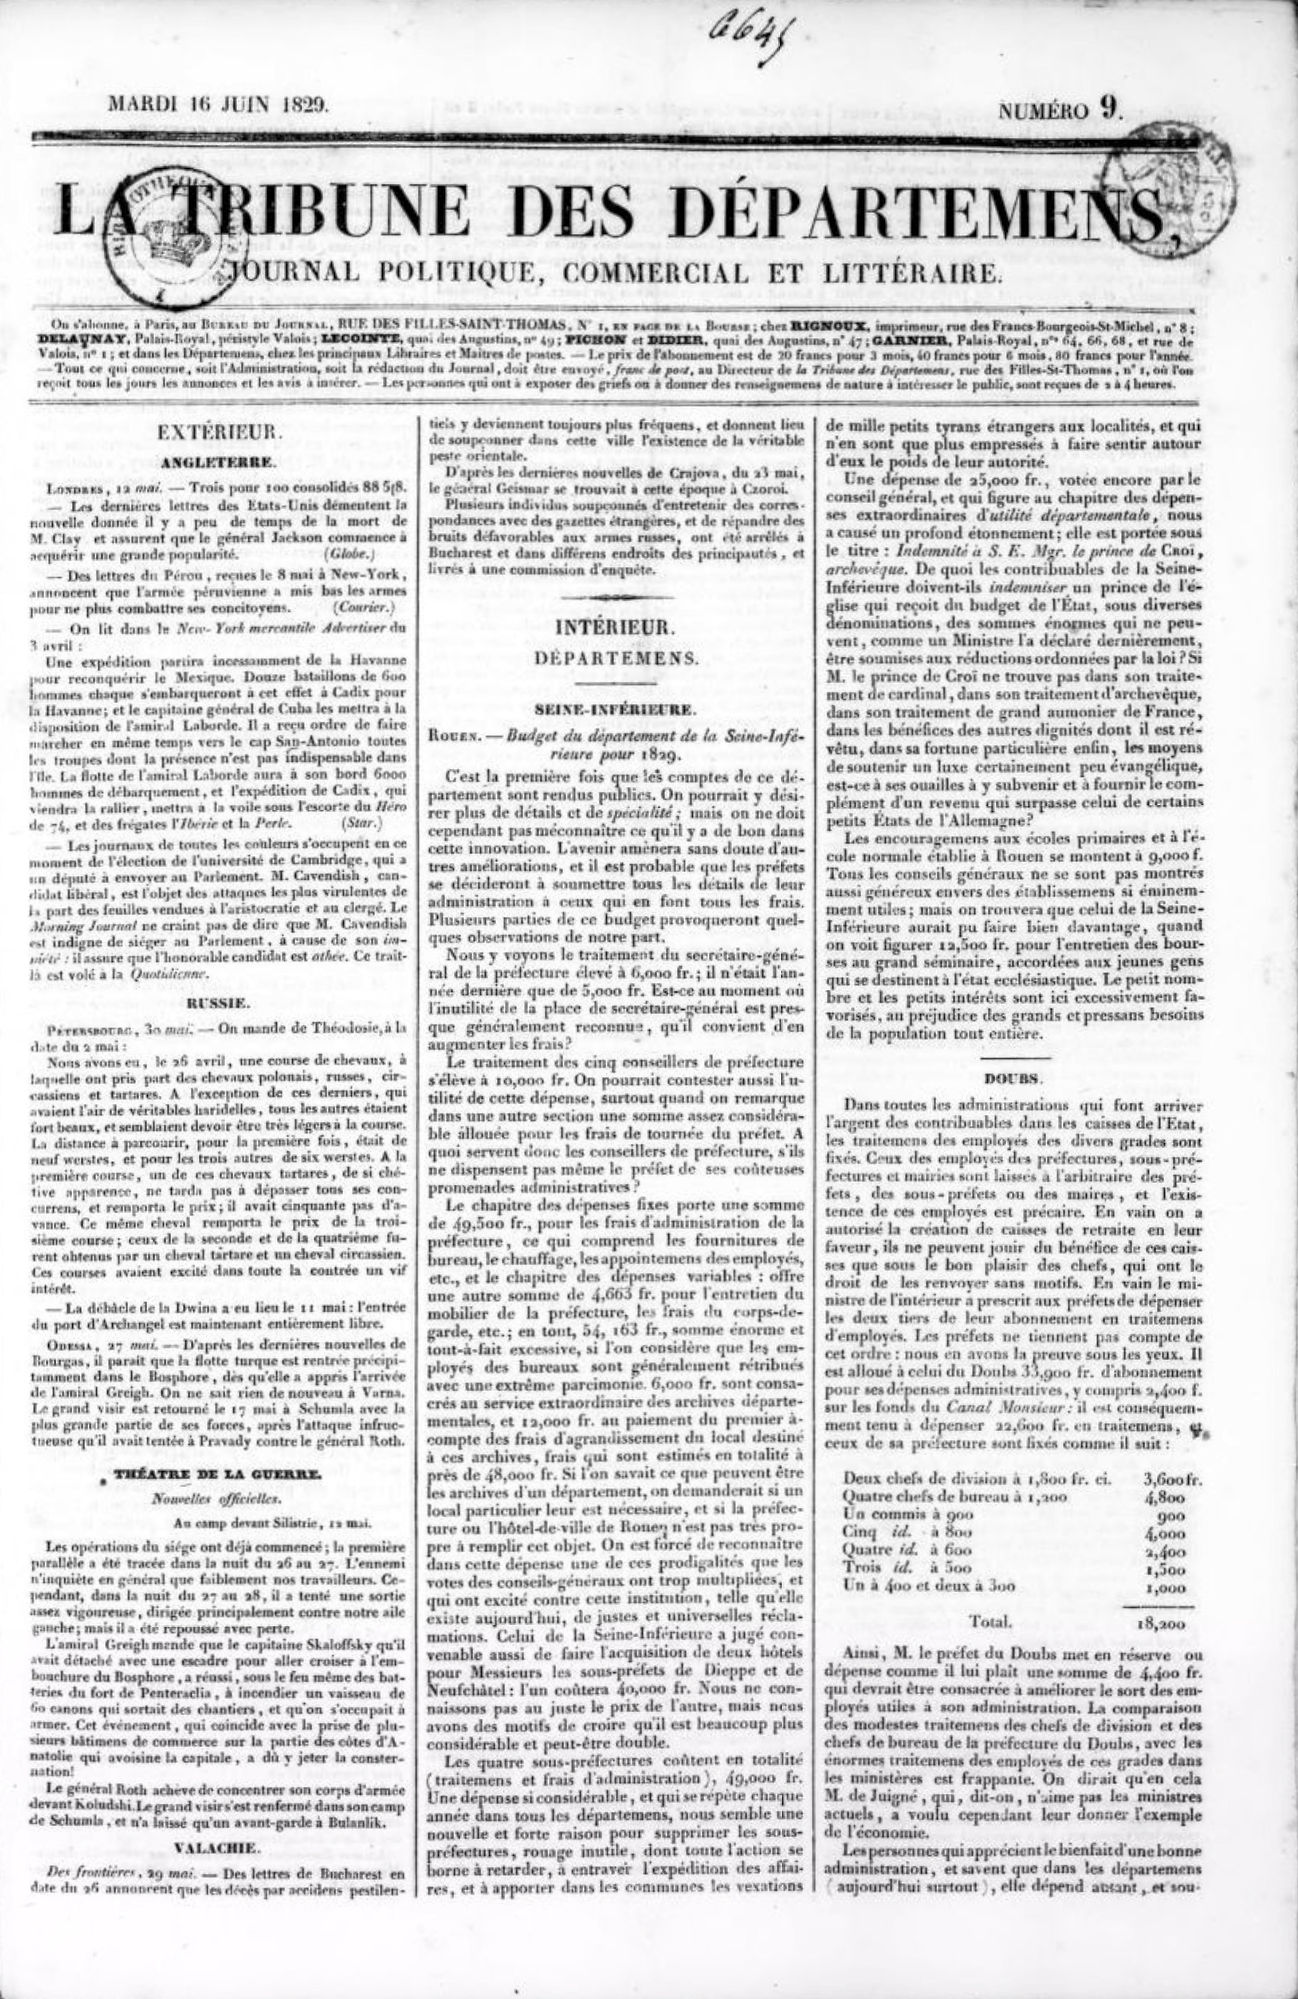 La Tribune des départemens (1829-1835)